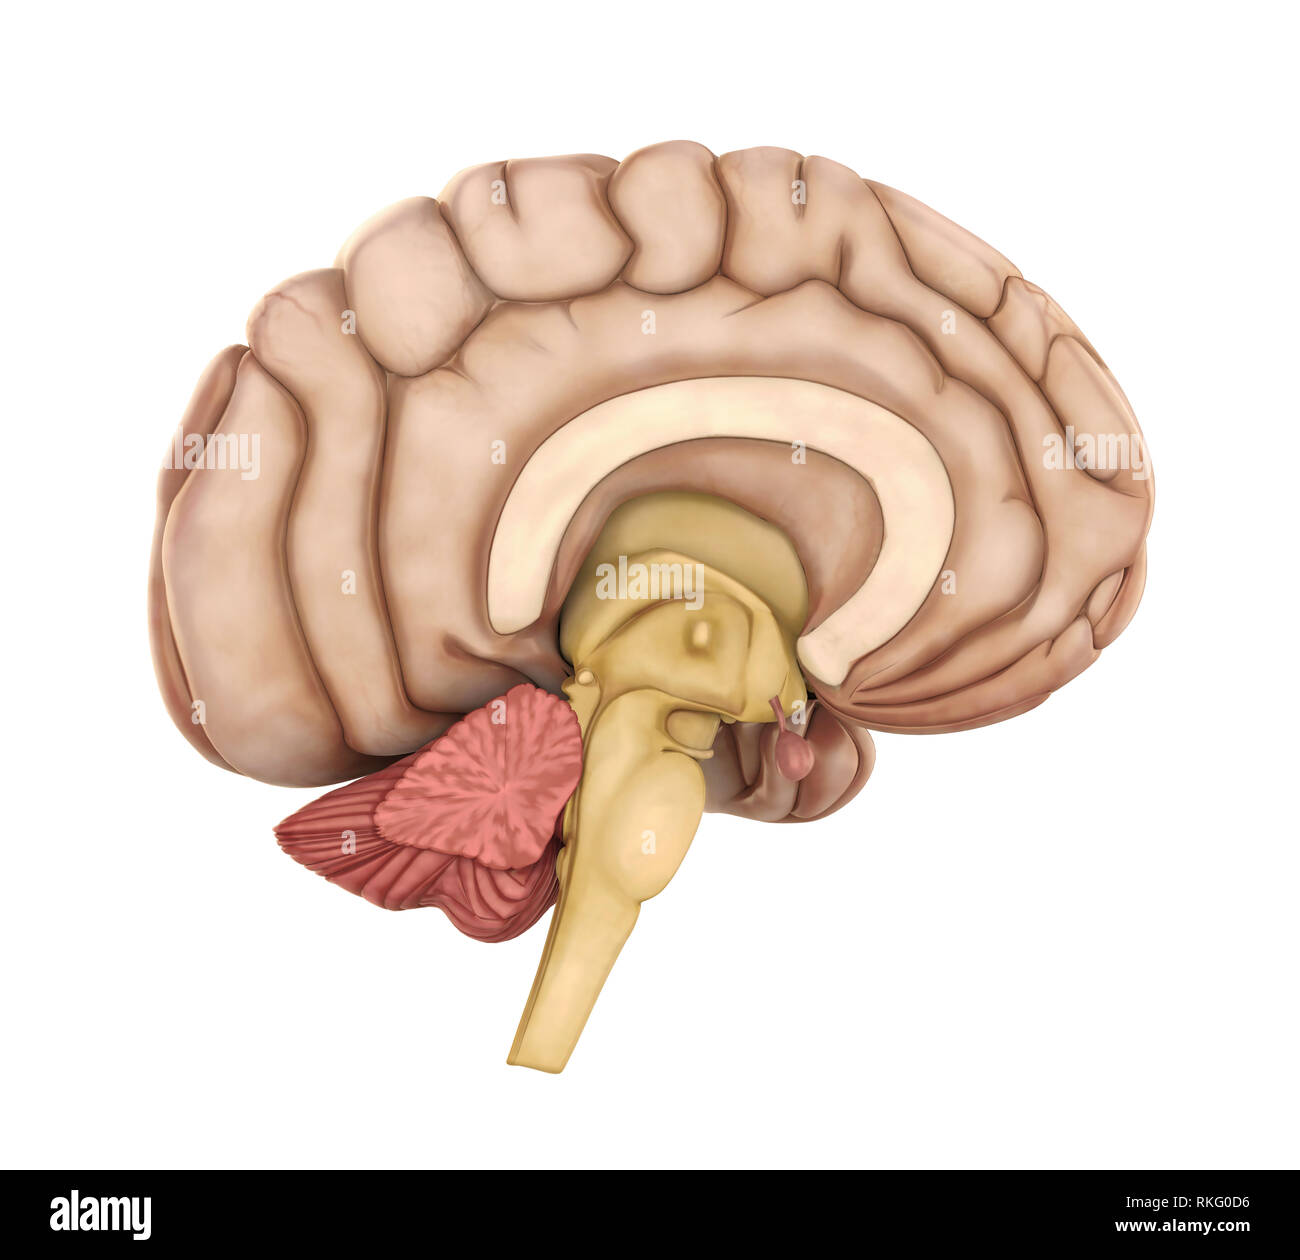 Die menschliche Anatomie des Gehirns isoliert Stockfoto